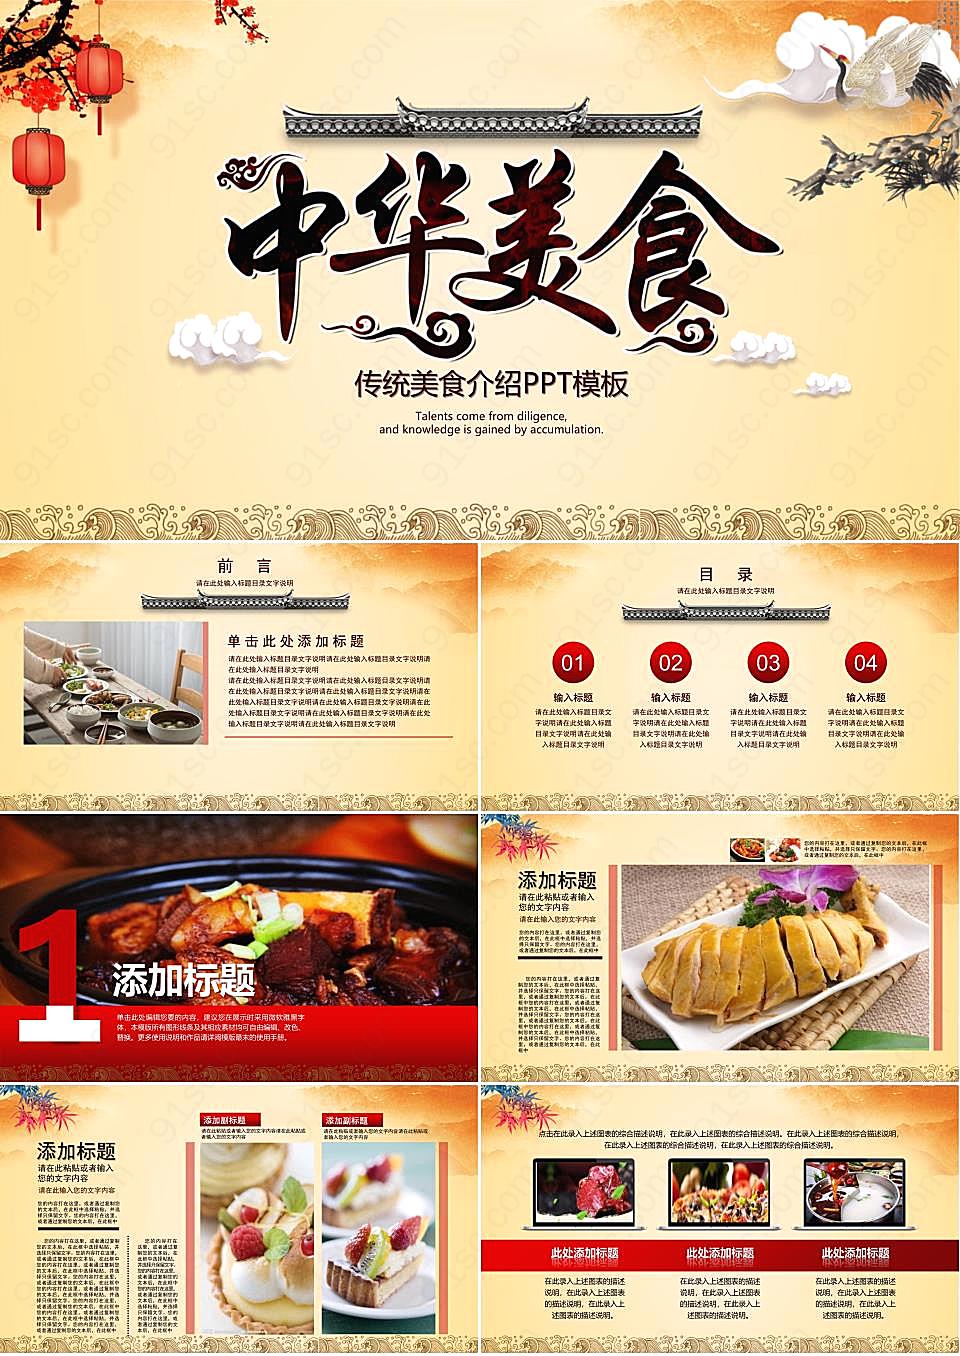 餐饮古典风格的《中华美食文化》PPT模板